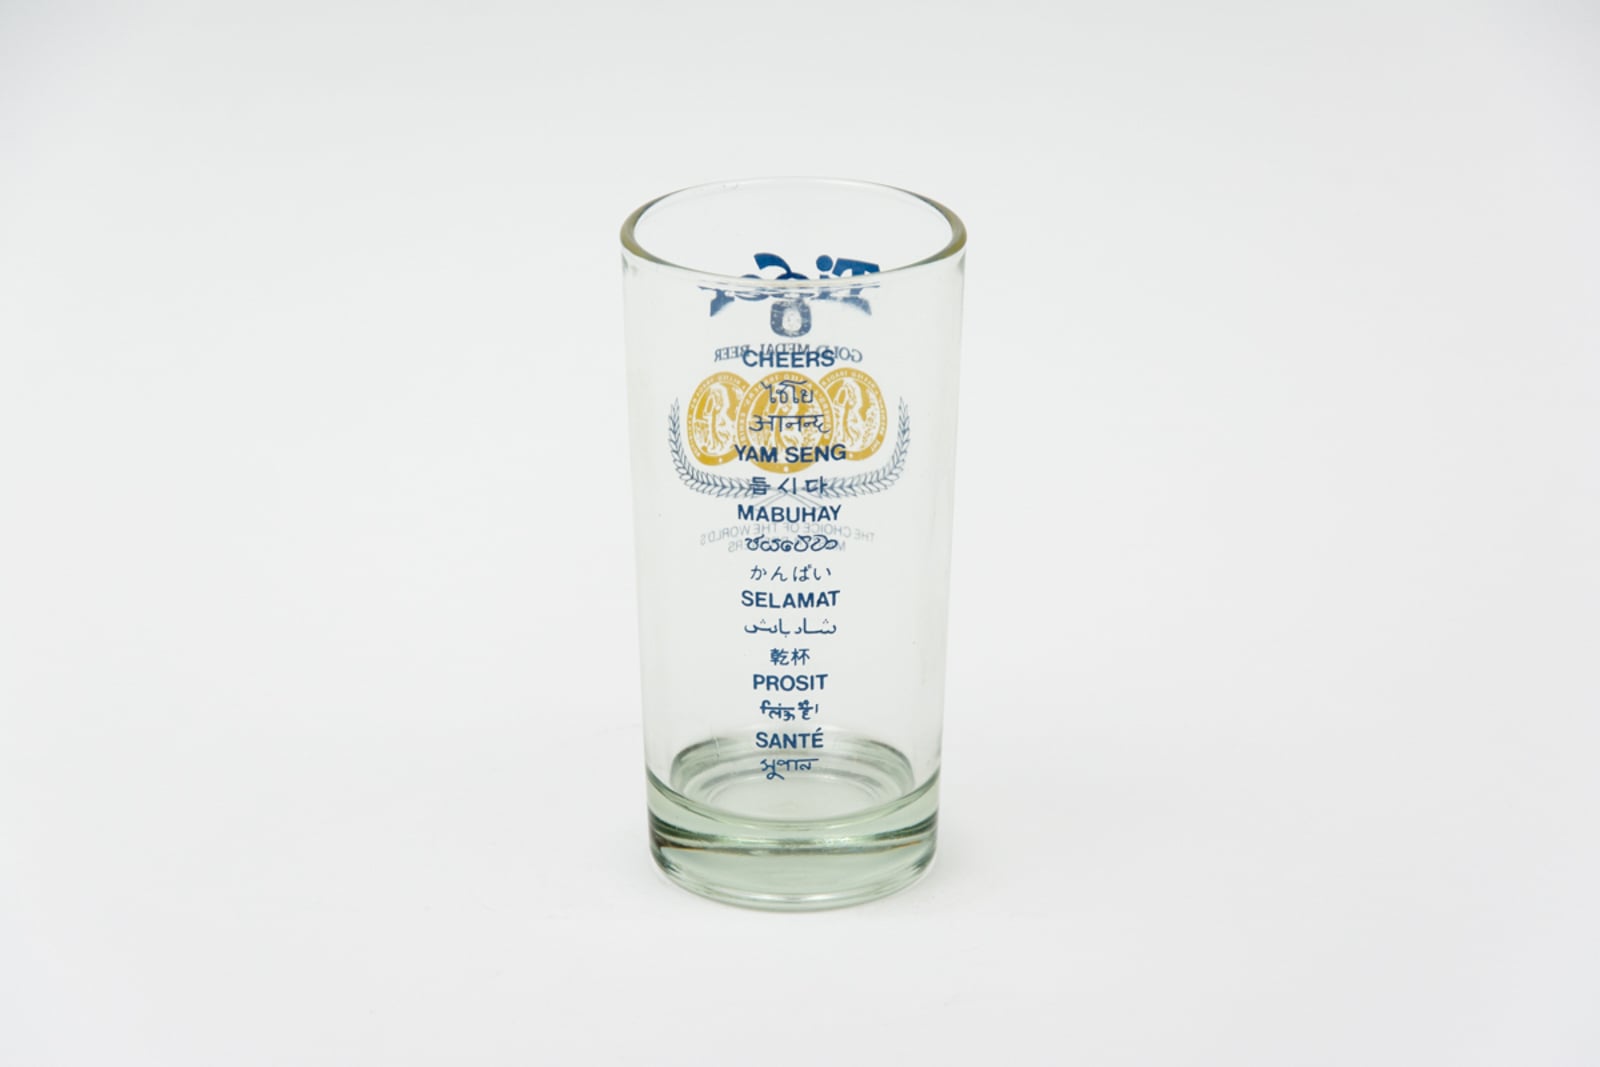 Tiger Gold Medal Beer Tumbler Glassware